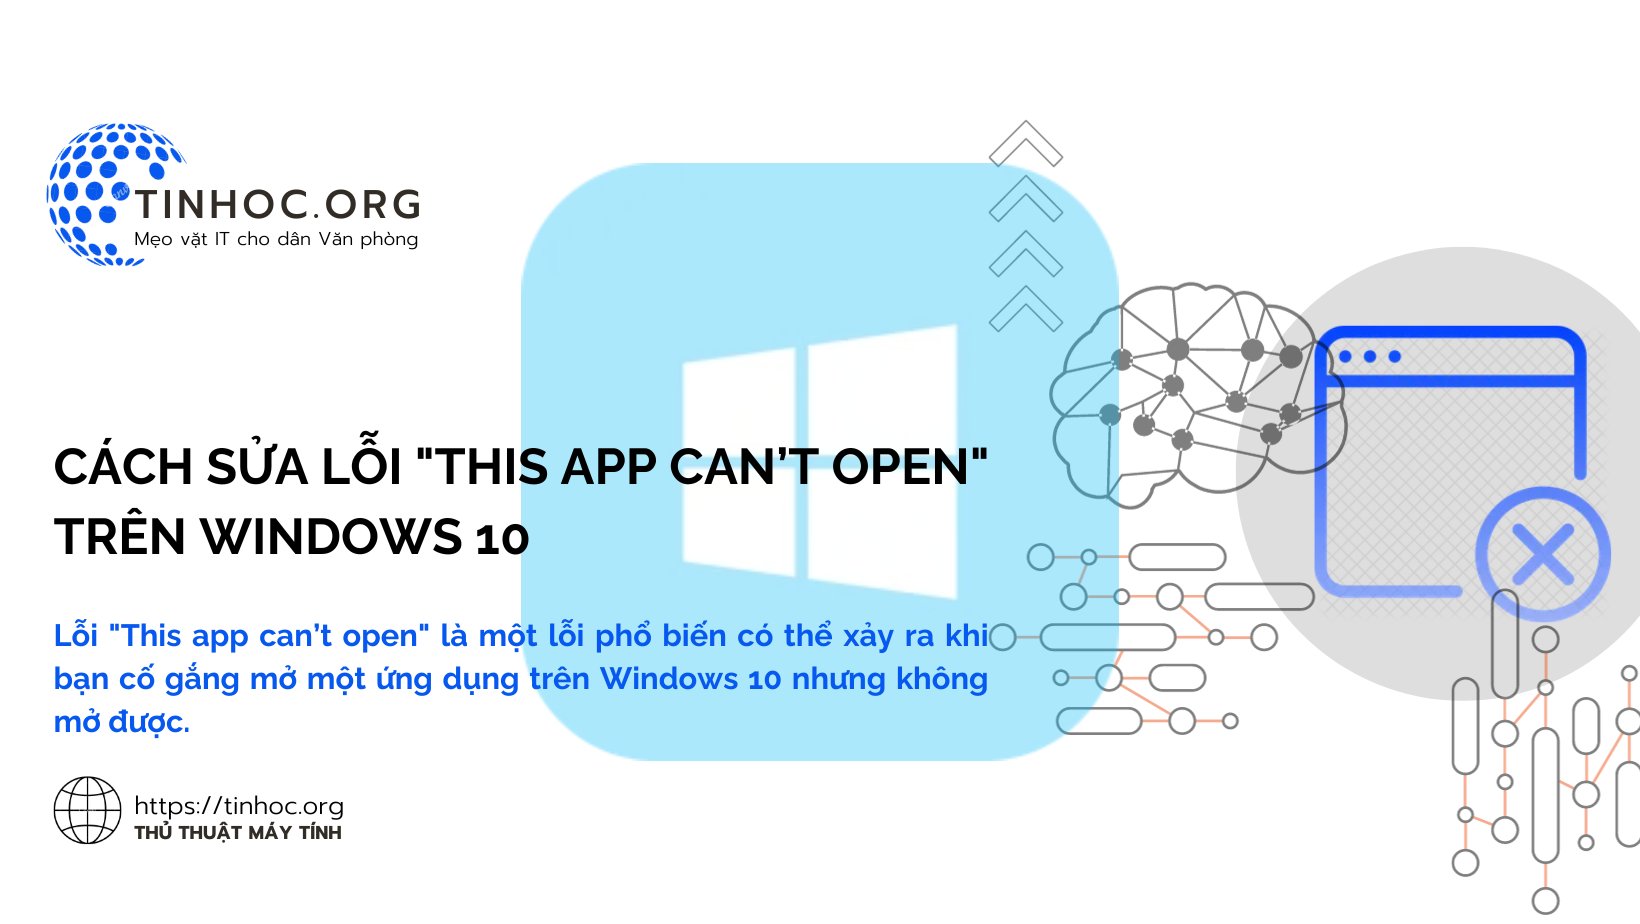 Lỗi "This app can’t open" là một lỗi phổ biến có thể xảy ra khi bạn cố gắng mở một ứng dụng trên Windows 10 nhưng không mở được.